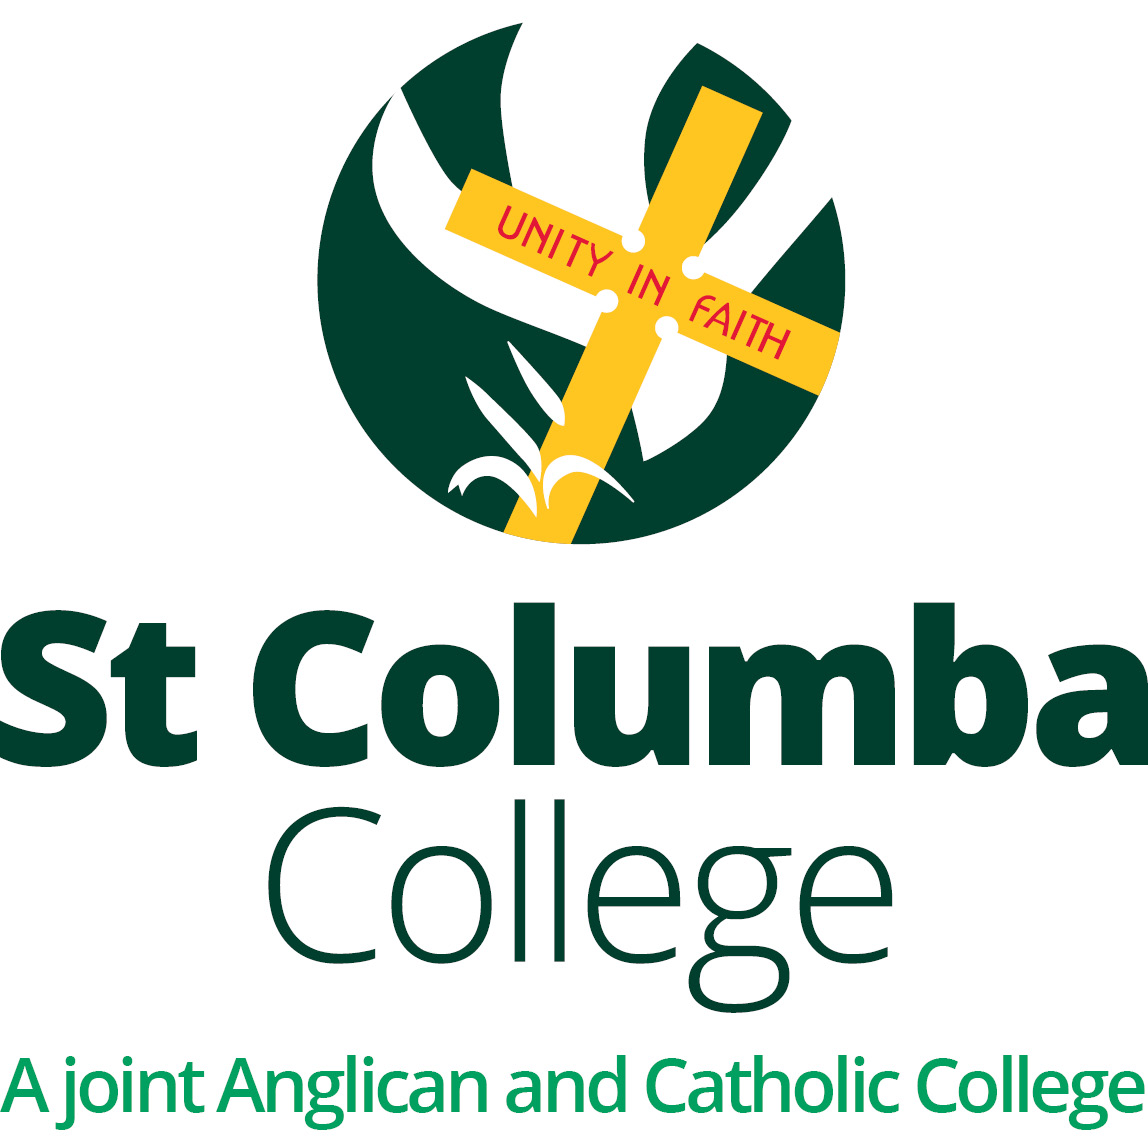 St Columba College